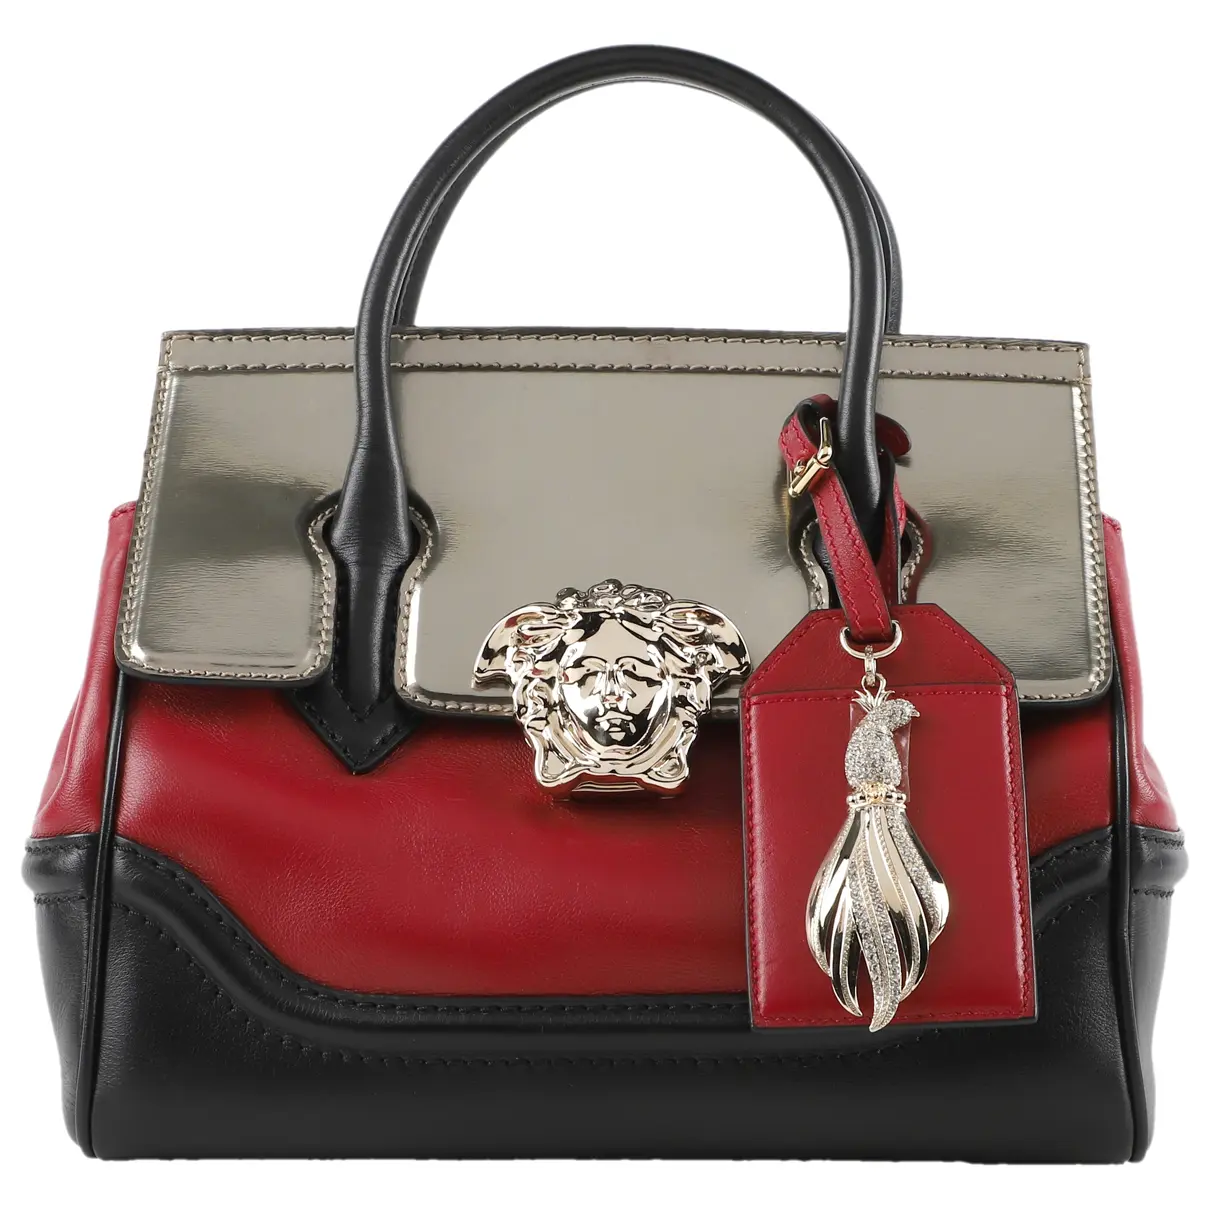 La Medusa leather handbag